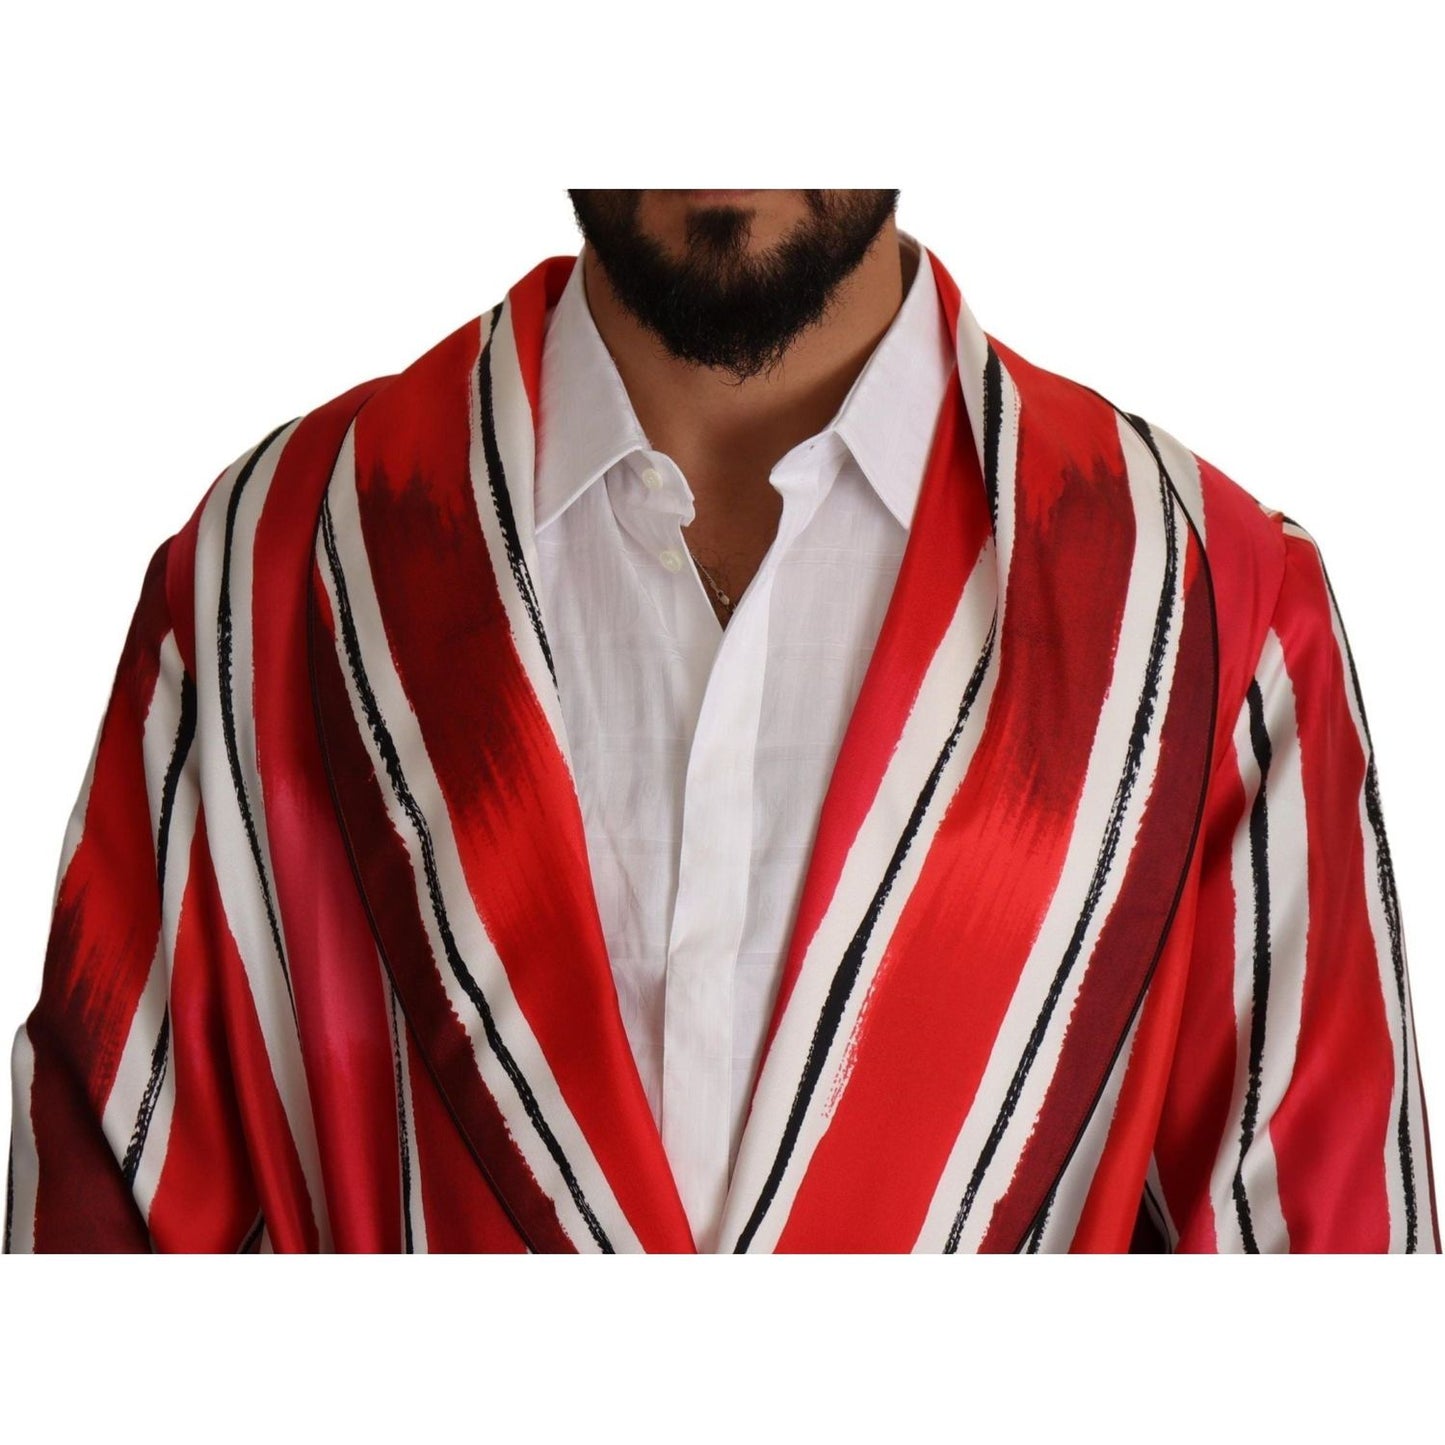 Dolce & Gabbana Chic Striped Silk Sleepwear Robe red-white-striped-silk-mens-night-gown-robe